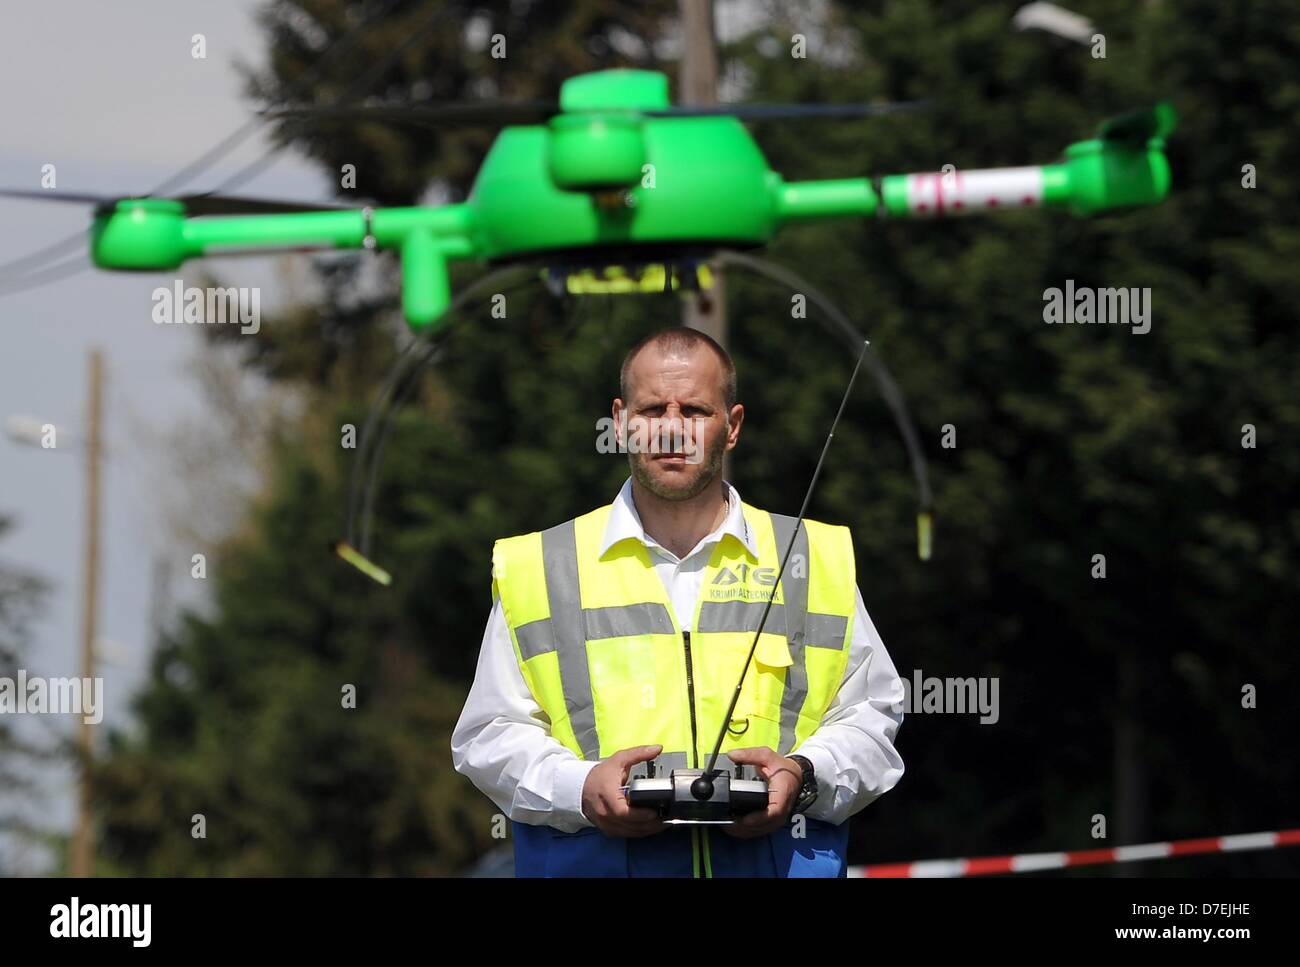 Drohne-Pilot steuert den Flug seine Drohne in Berlin, Deutschland, 6. Mai 2013. Der remote gesteuerte Helikopter soll Kabel des Telekommunikationsunternehmens Telekom künstlichen DNA zuweisen, um Diebstähle von Kupfer zu verhindern. Foto: BRITTA PEDERSEN Stockfoto